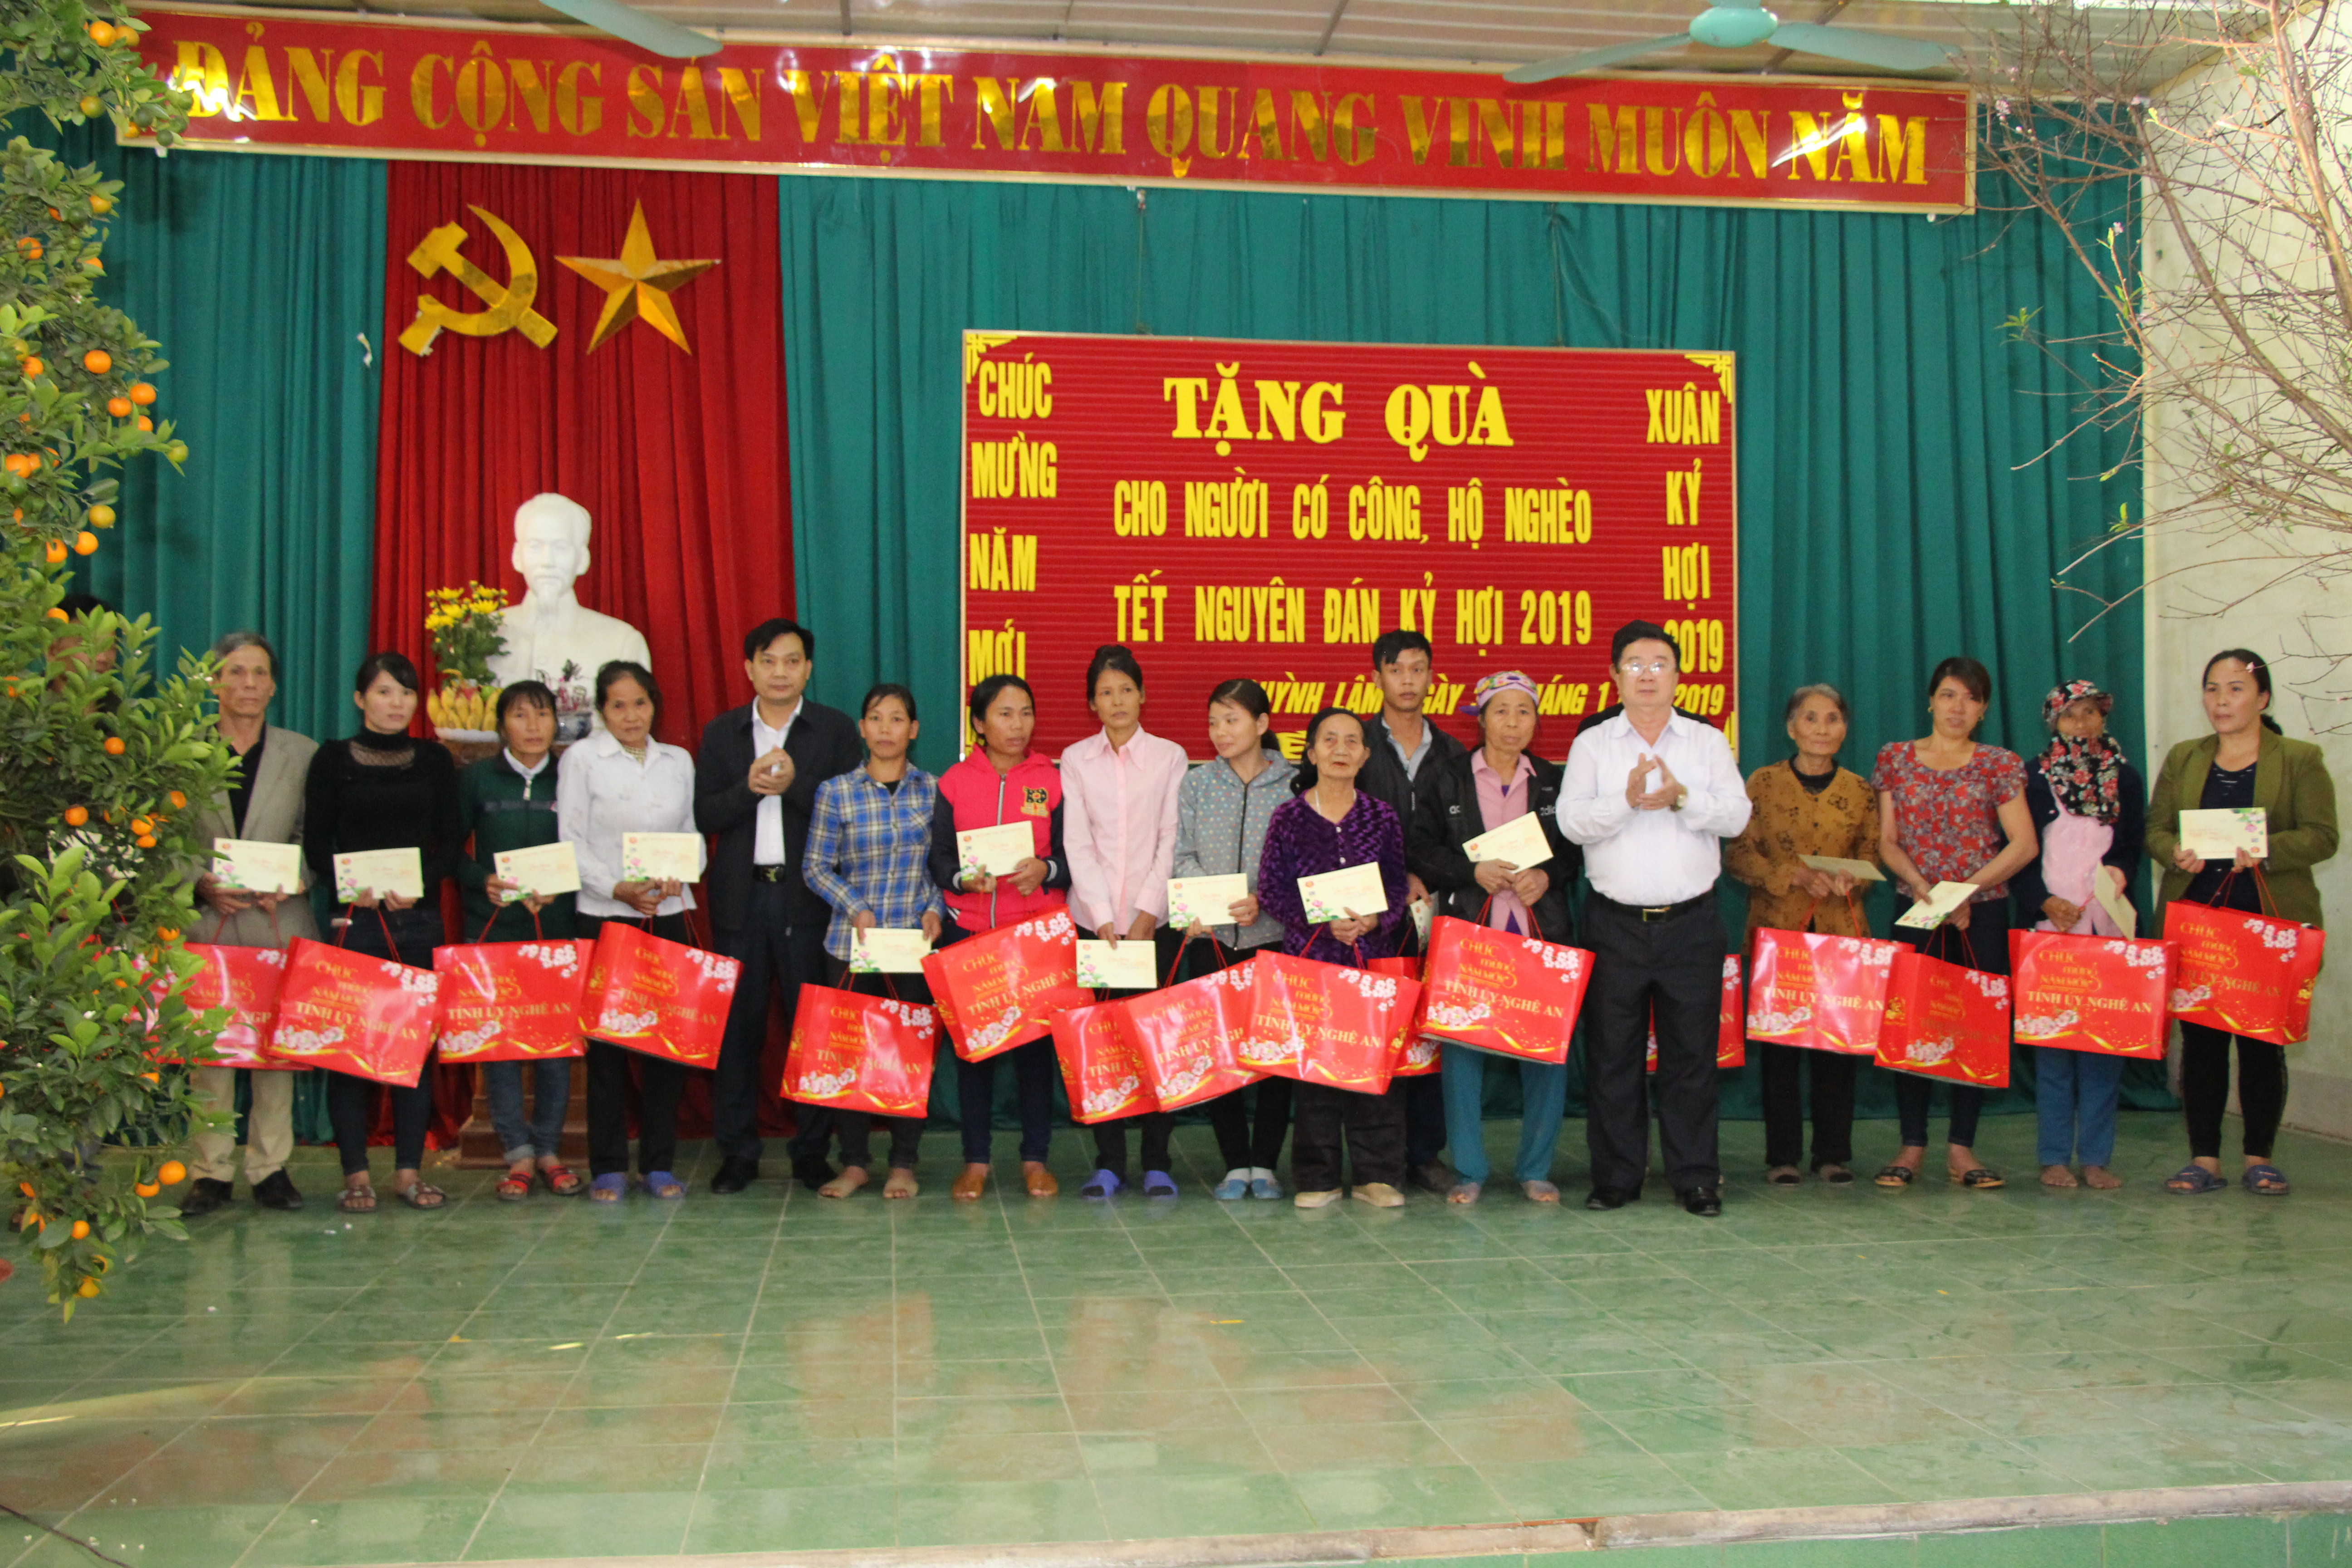 Đại biểu trao quà cho hộ nghèo các xã Ngọc Sơn, Quỳnh Mỹ, Quỳnh Thanh và Quỳnh Lâm. Ảnh: Đào Tuấn